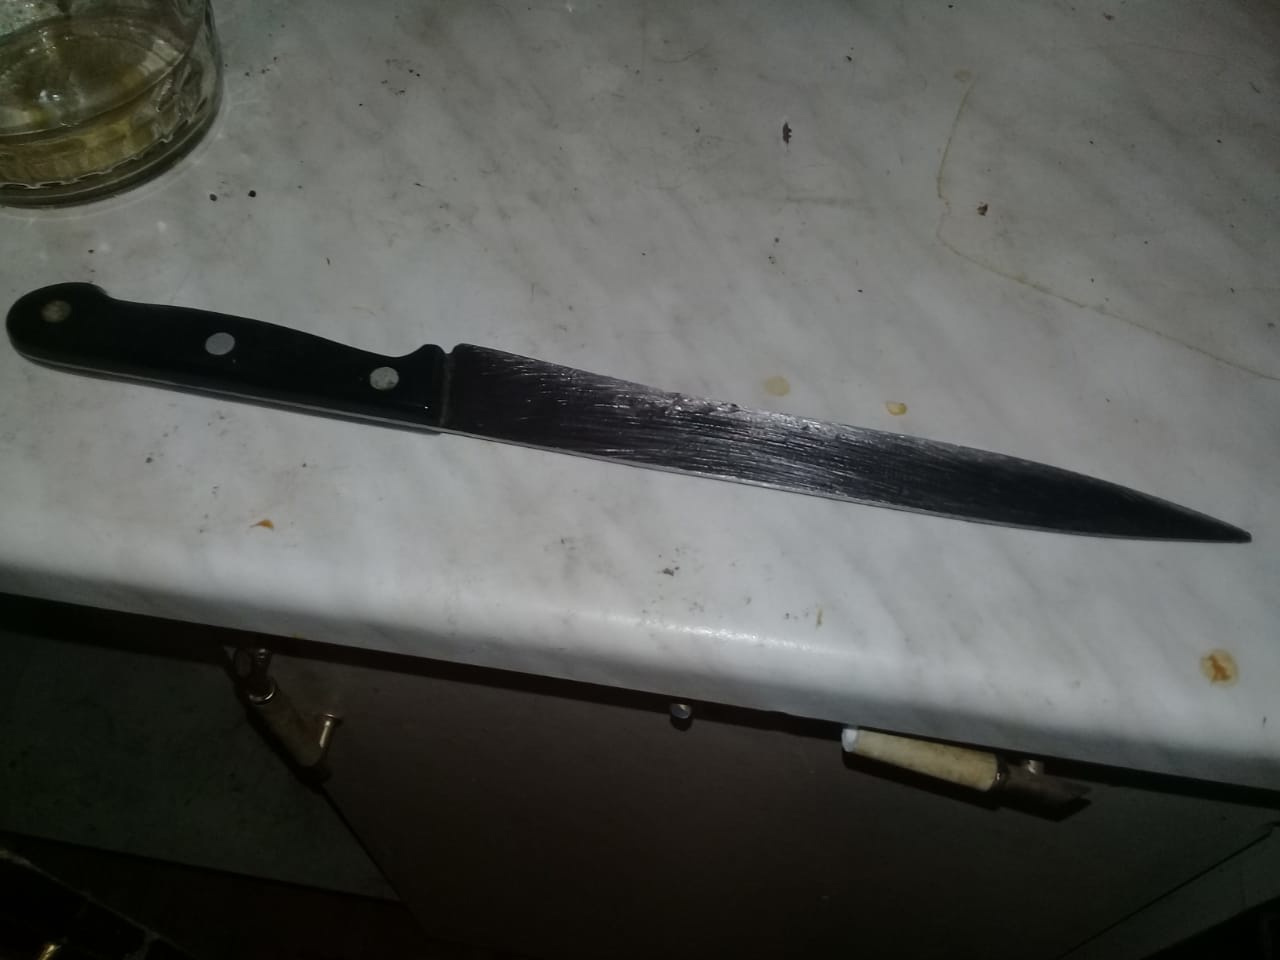 Нож нашли при обыске дома